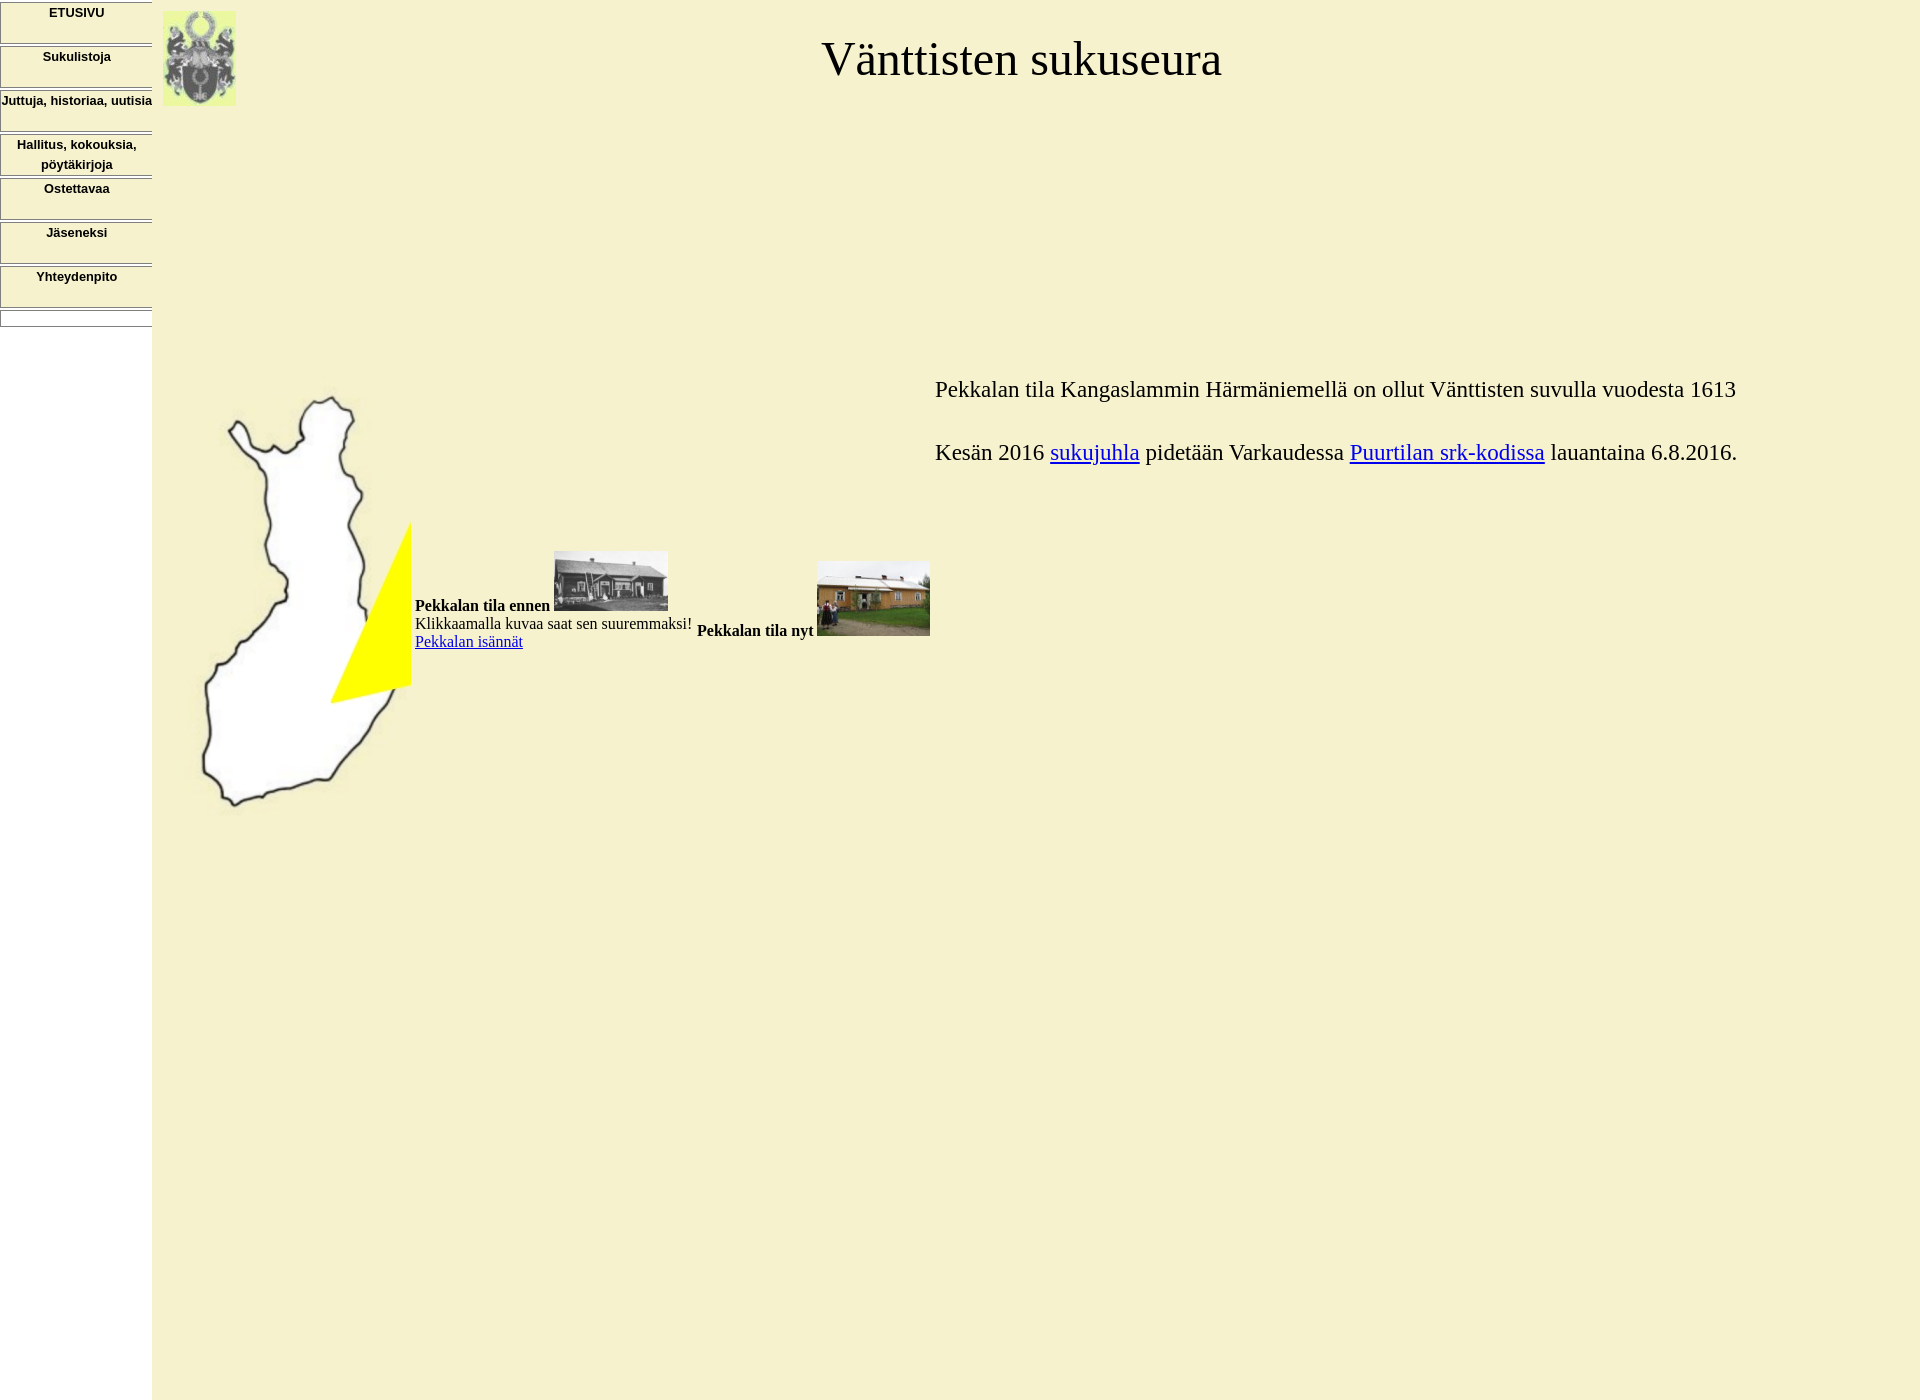 Screenshot for wanttistensukuseura.fi